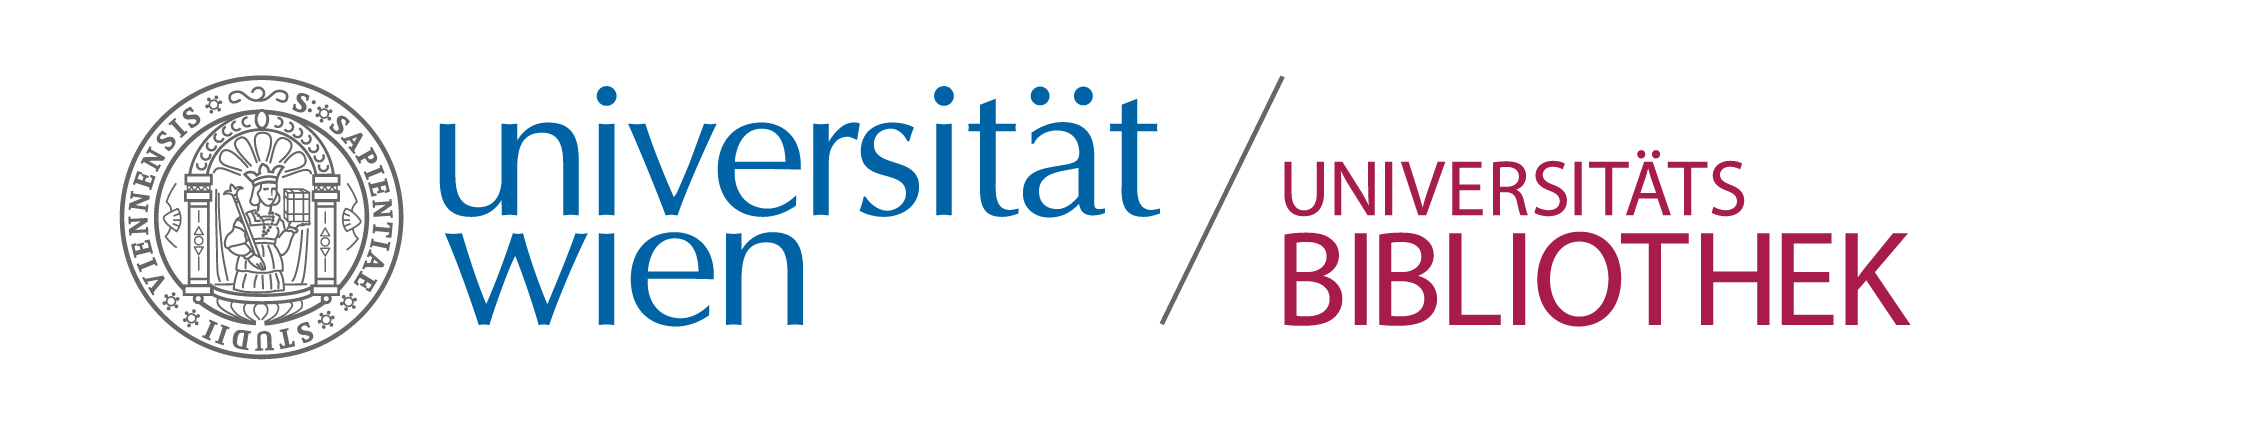 UNI Logo Bibliothek RGB FINAL